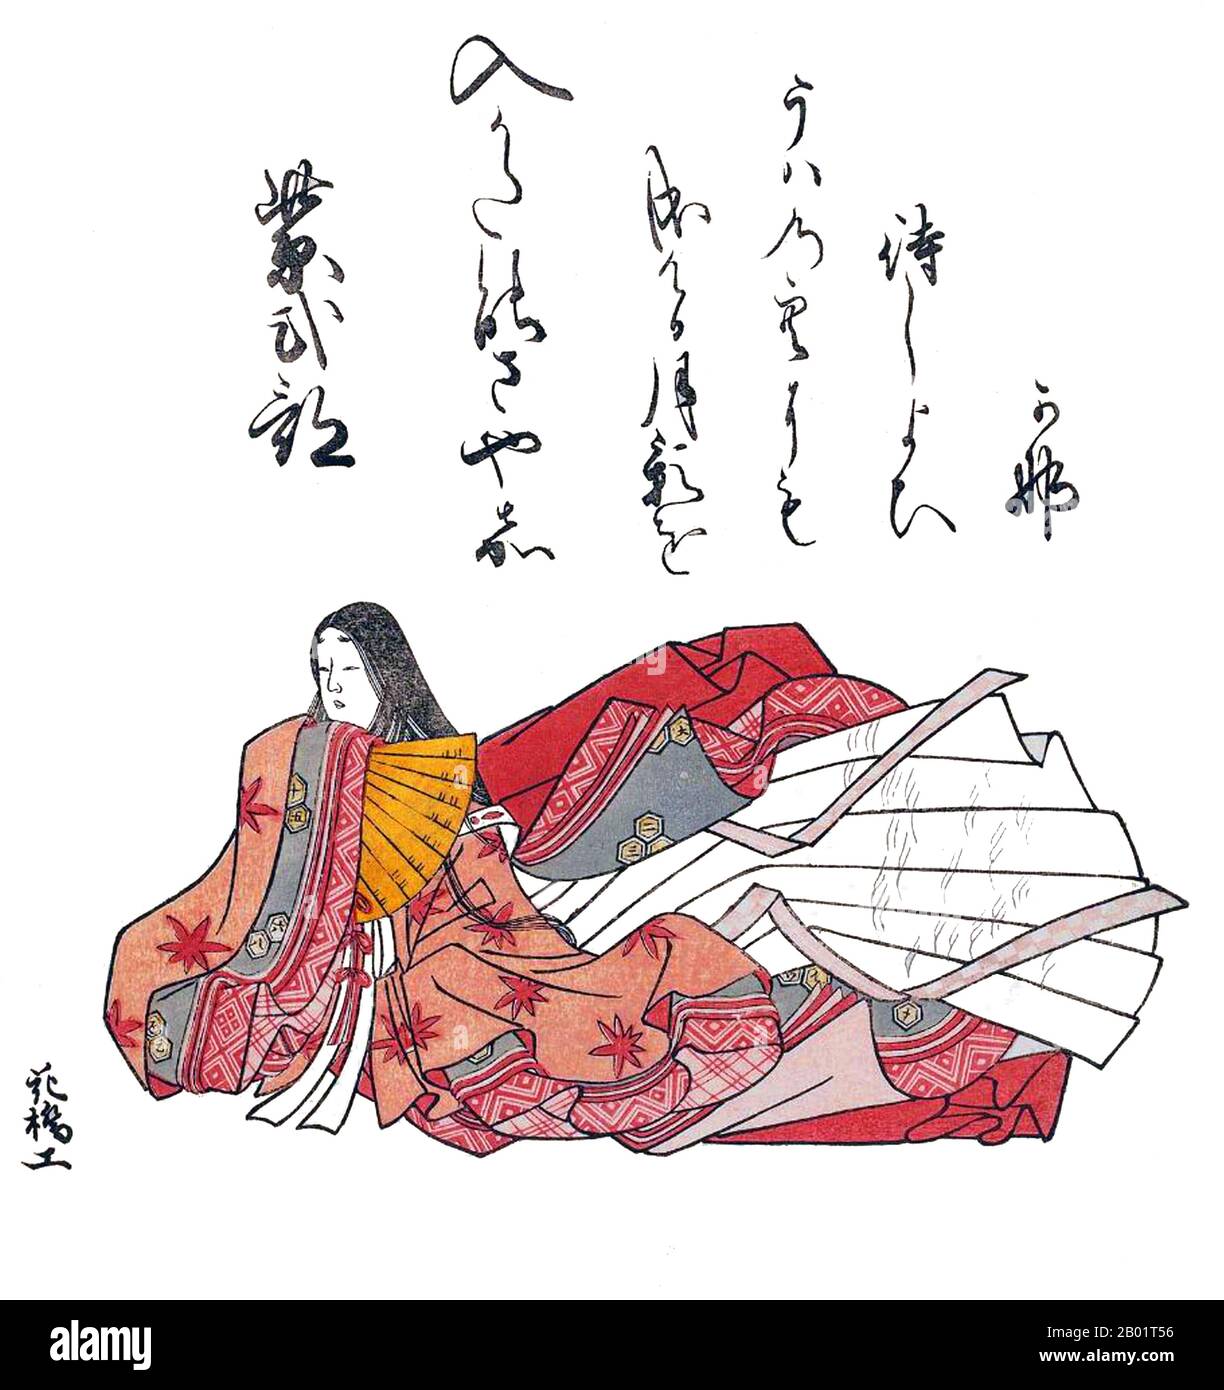 Japan: Lady Murasaki Shikibu (ca. 973–1025), Dichterin und Schriftstellerin. Ukiyo-e Holzblock-Druck von Komatsuken Kiyomitsu (18. Jahrhundert), 1765. Murasaki Shikibu war eine japanische Schriftstellerin, Dichterin und Hofdame während der Heian-Zeit. Sie ist bekannt als die Autorin der Geschichte von Genji, die zwischen 1000 und 1012 auf Japanisch geschrieben wurde. Murasaki Shikibu ist ein Spitzname; ihr richtiger Name ist unbekannt, aber sie könnte Fujiwara Takako gewesen sein, die 1007 in einem Tagebuch des Hofes als kaiserliche Dame in Warten erwähnt wurde. Stockfoto